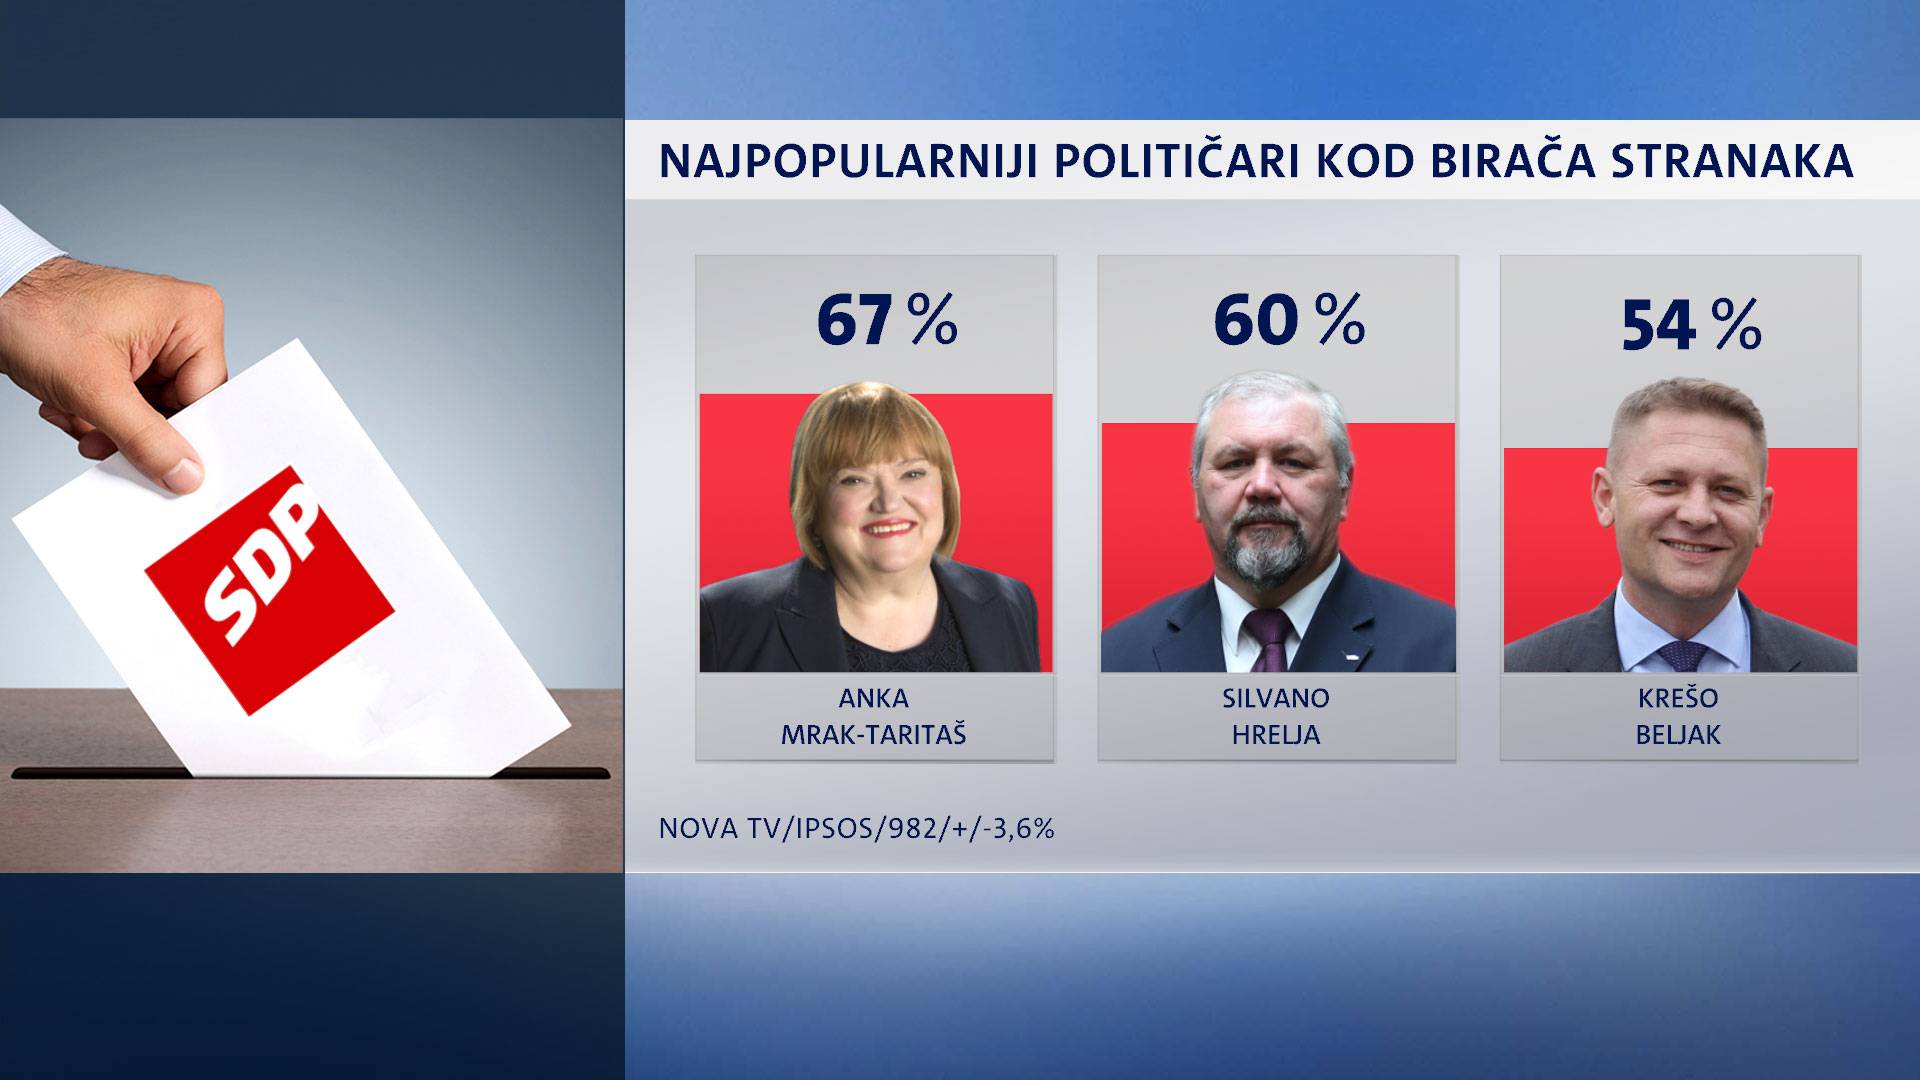 Kolinda i dalje najpopularnija: Iza nje Sinčić, Bandić pa Plenki